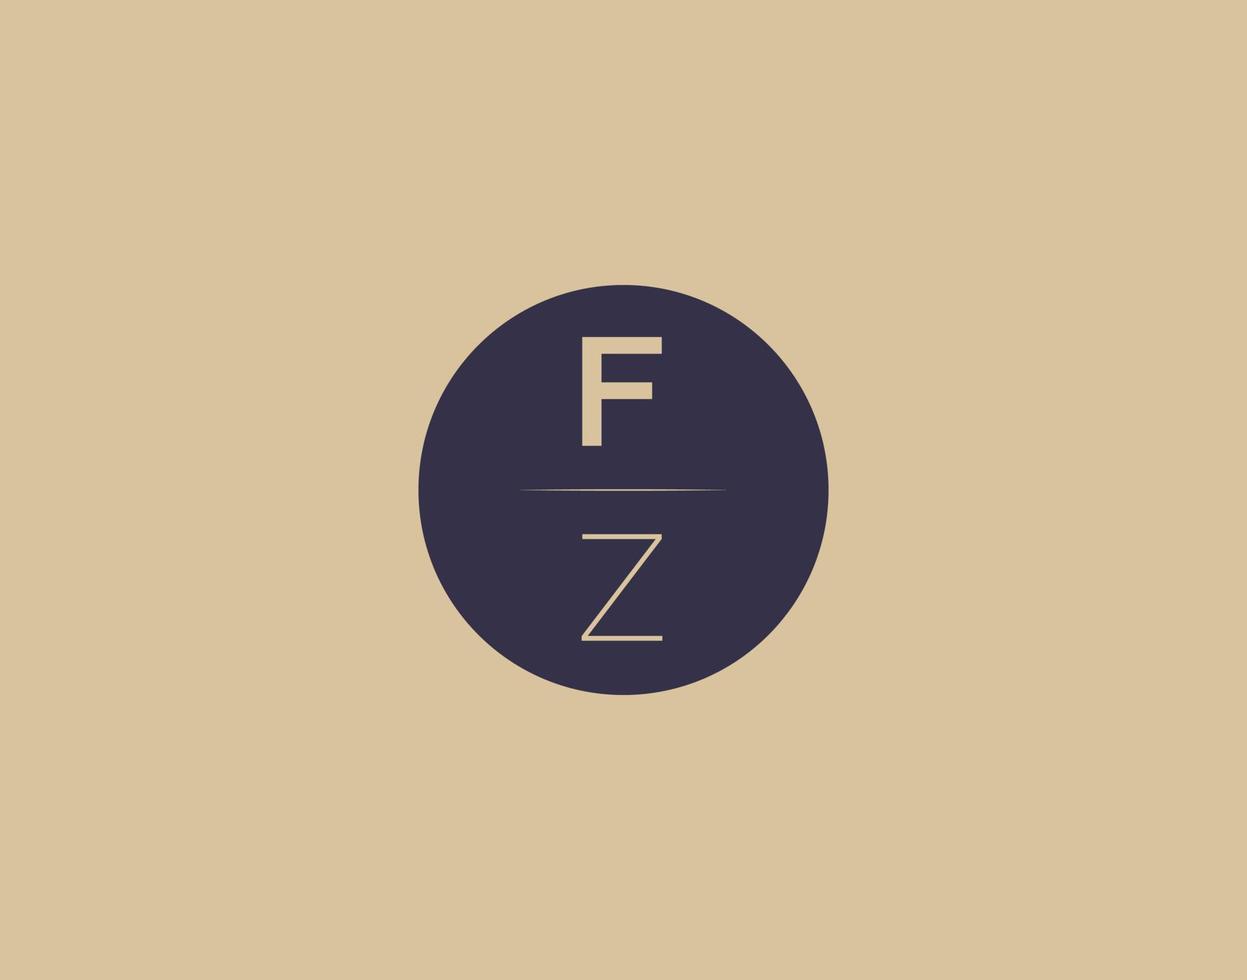 FZ letter modern elegant logo design vector images